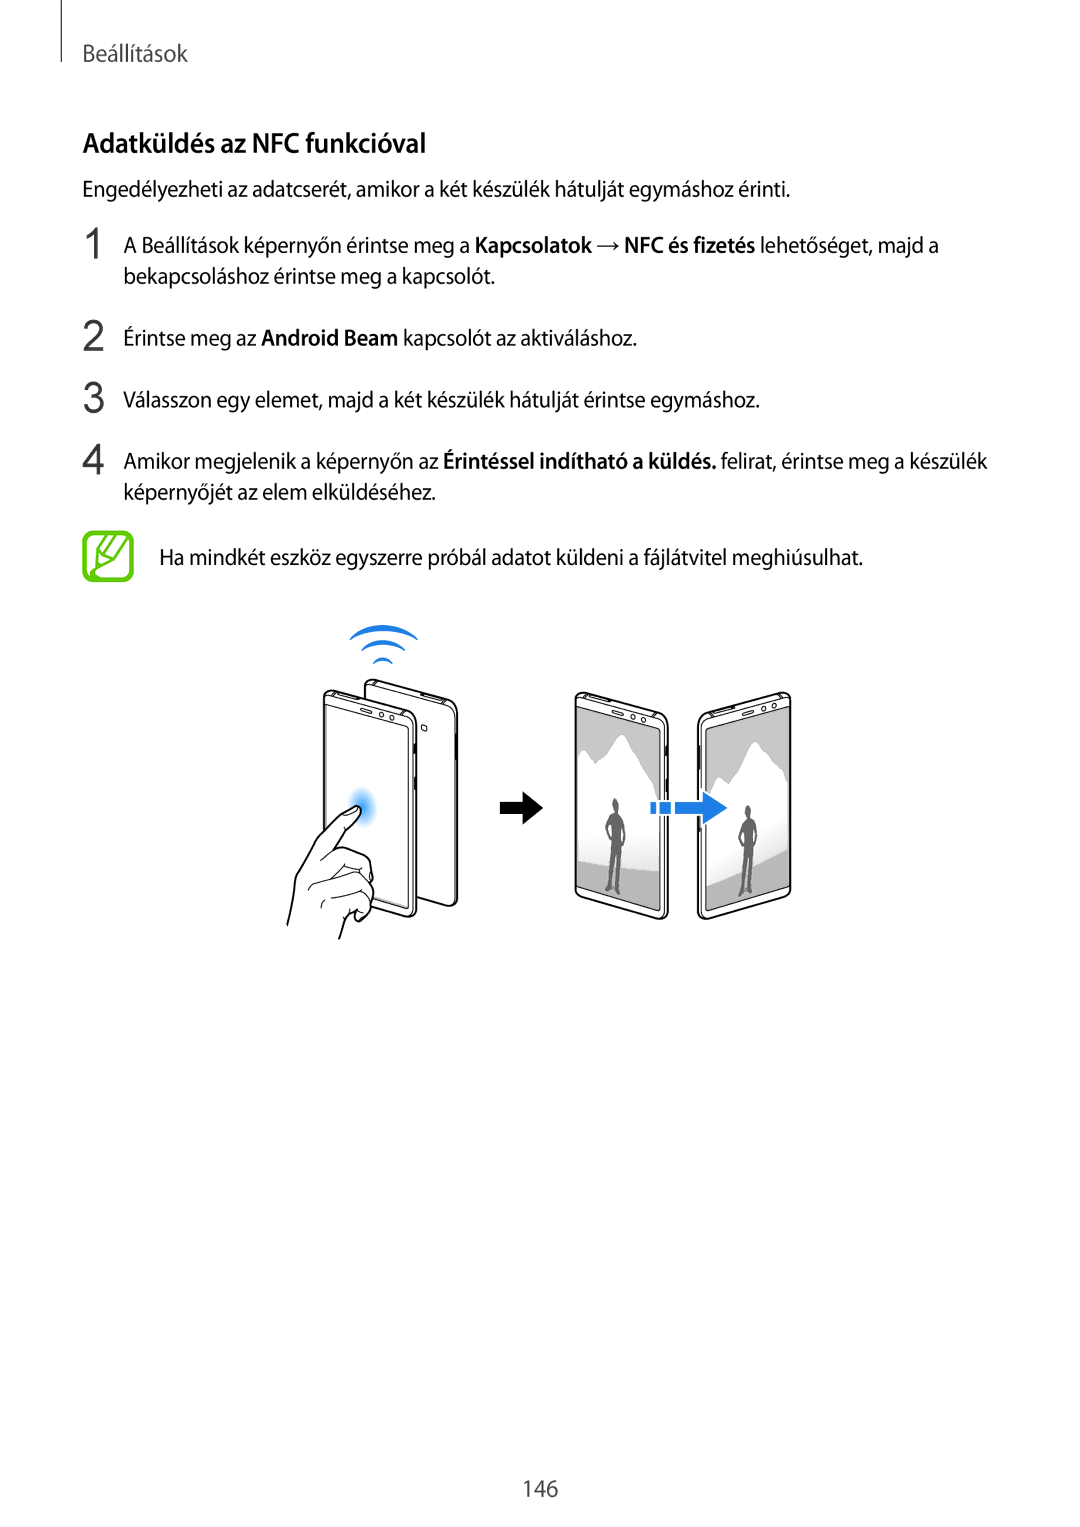 Samsung SM-A530FZVDXEH, SM-A530FZDDXEH, SM-A530FZKDXEH, SM-A530FZVAPAN, SM-A530FZKAPAN manual Adatküldés az NFC funkcióval 